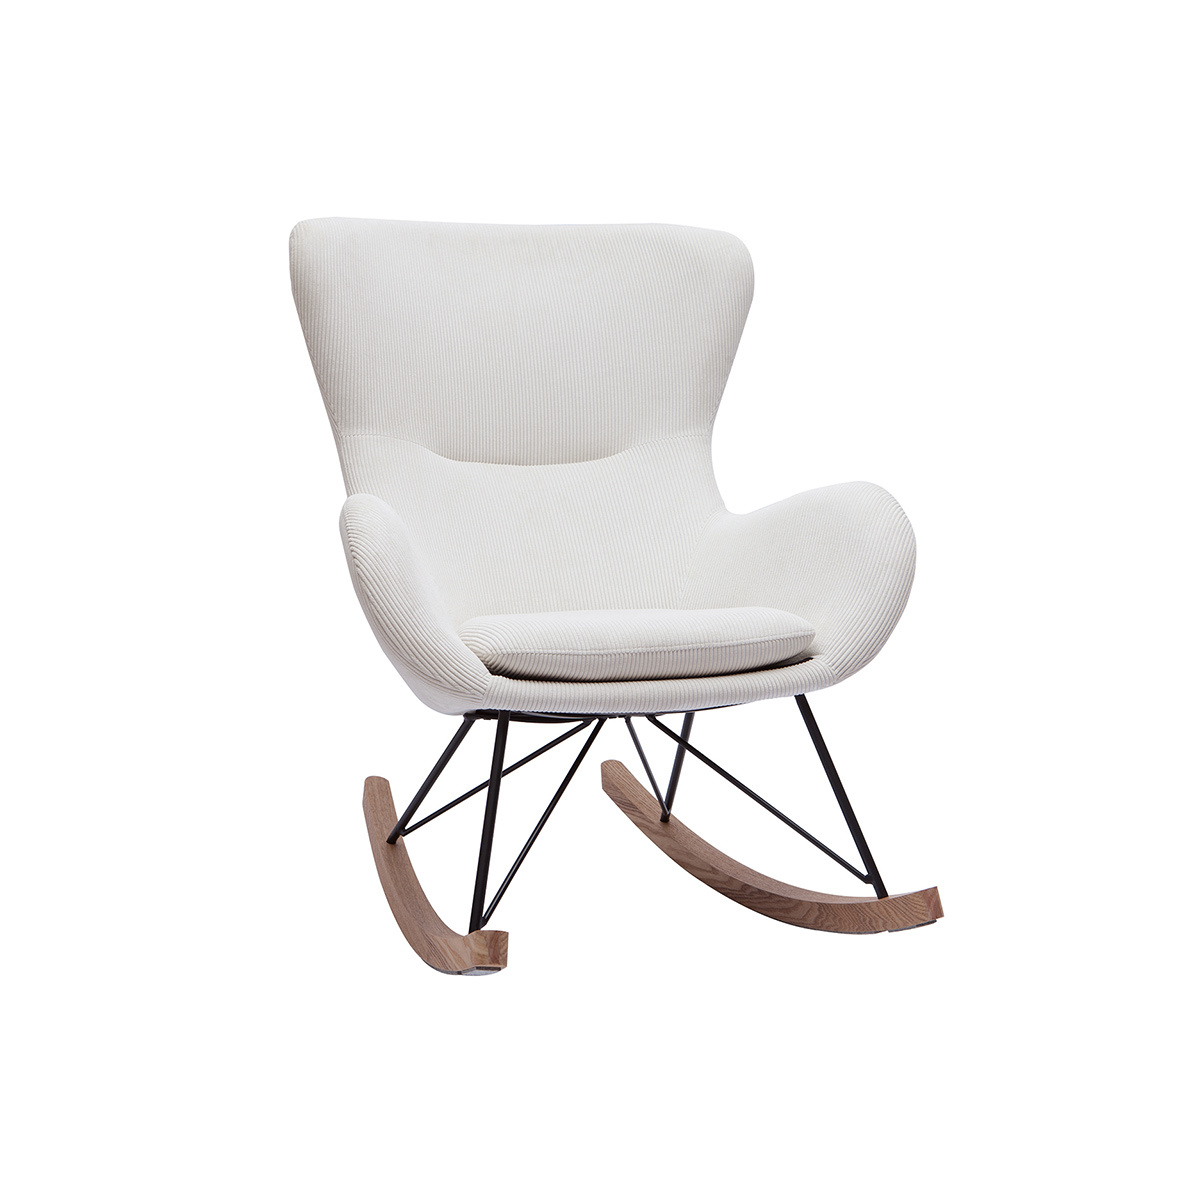 Rocking chair scandinave en tissu velours côtelé beige, métal noir et bois clair ESKUA vue1